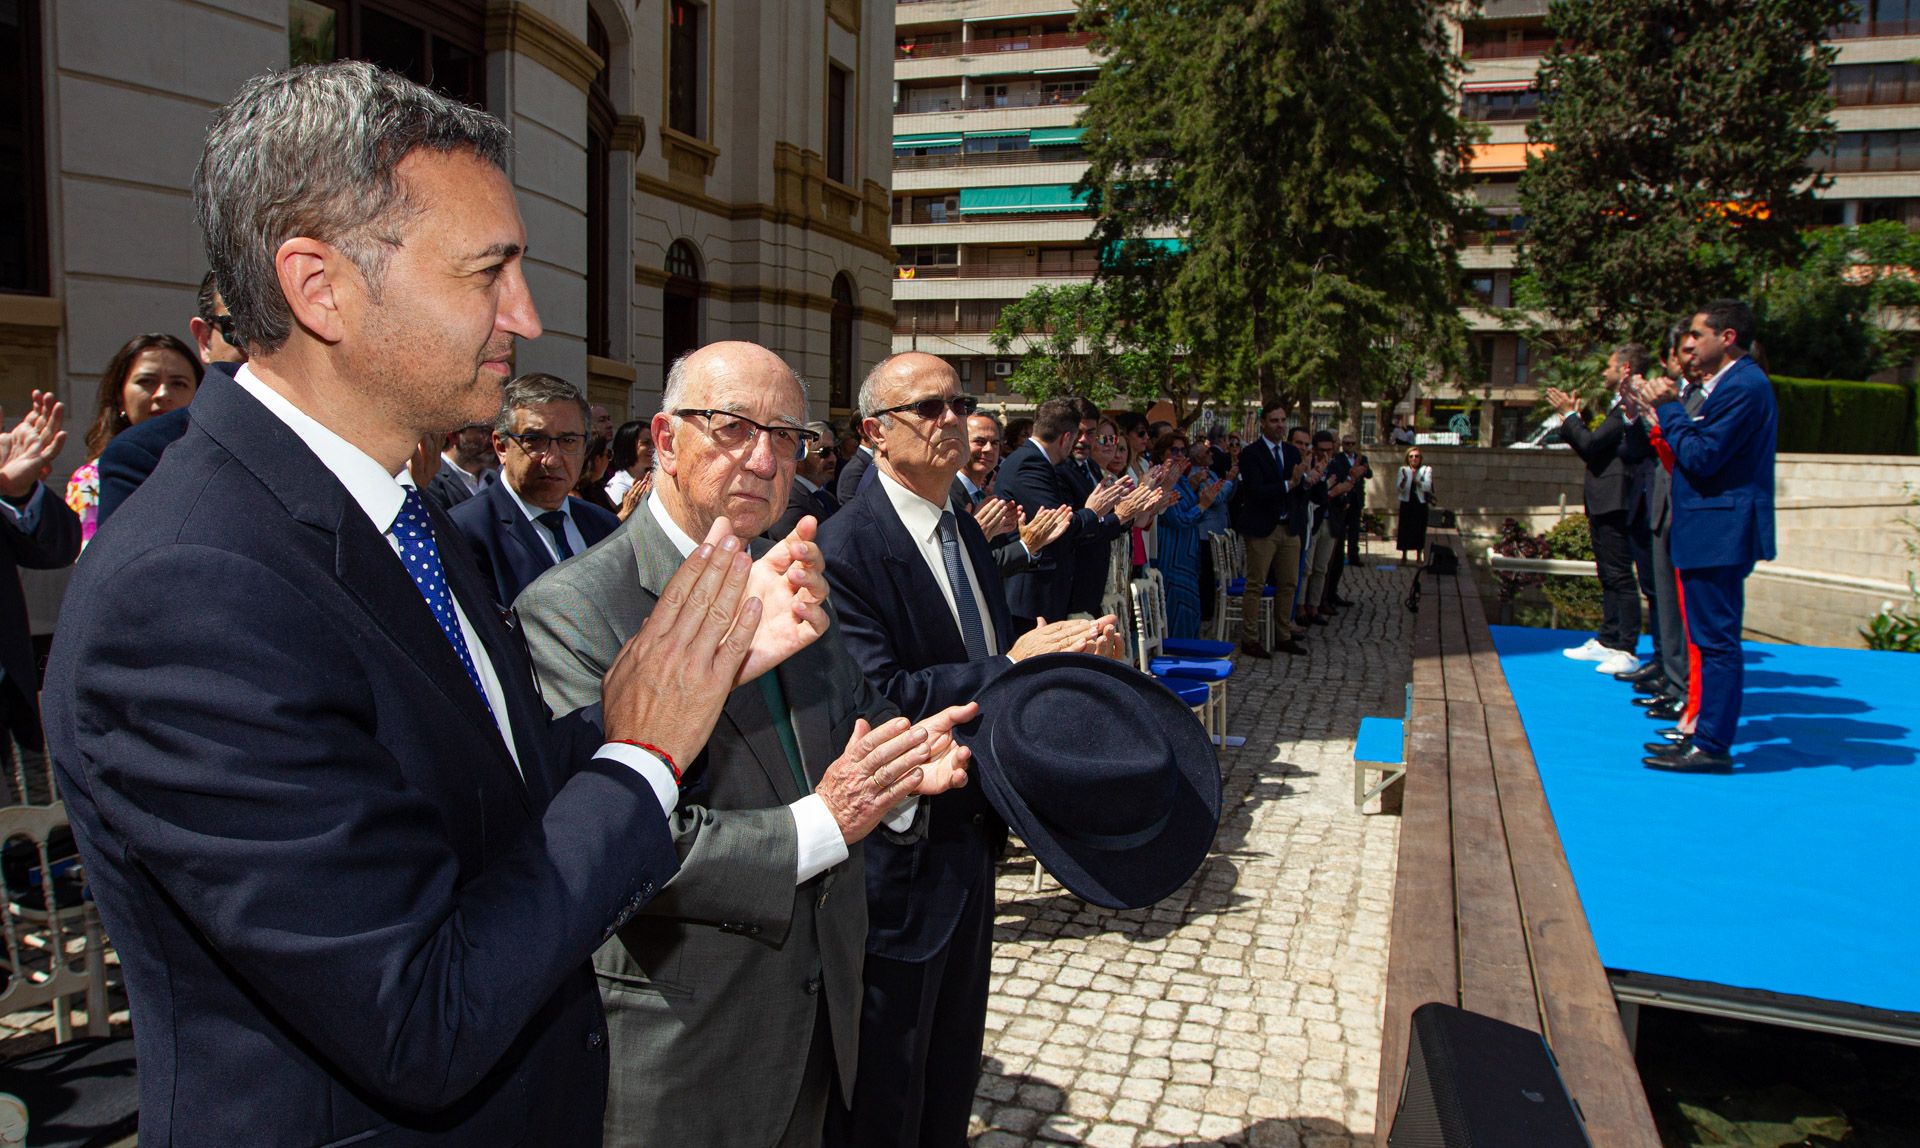 La Diputación celebra su 200 aniversario